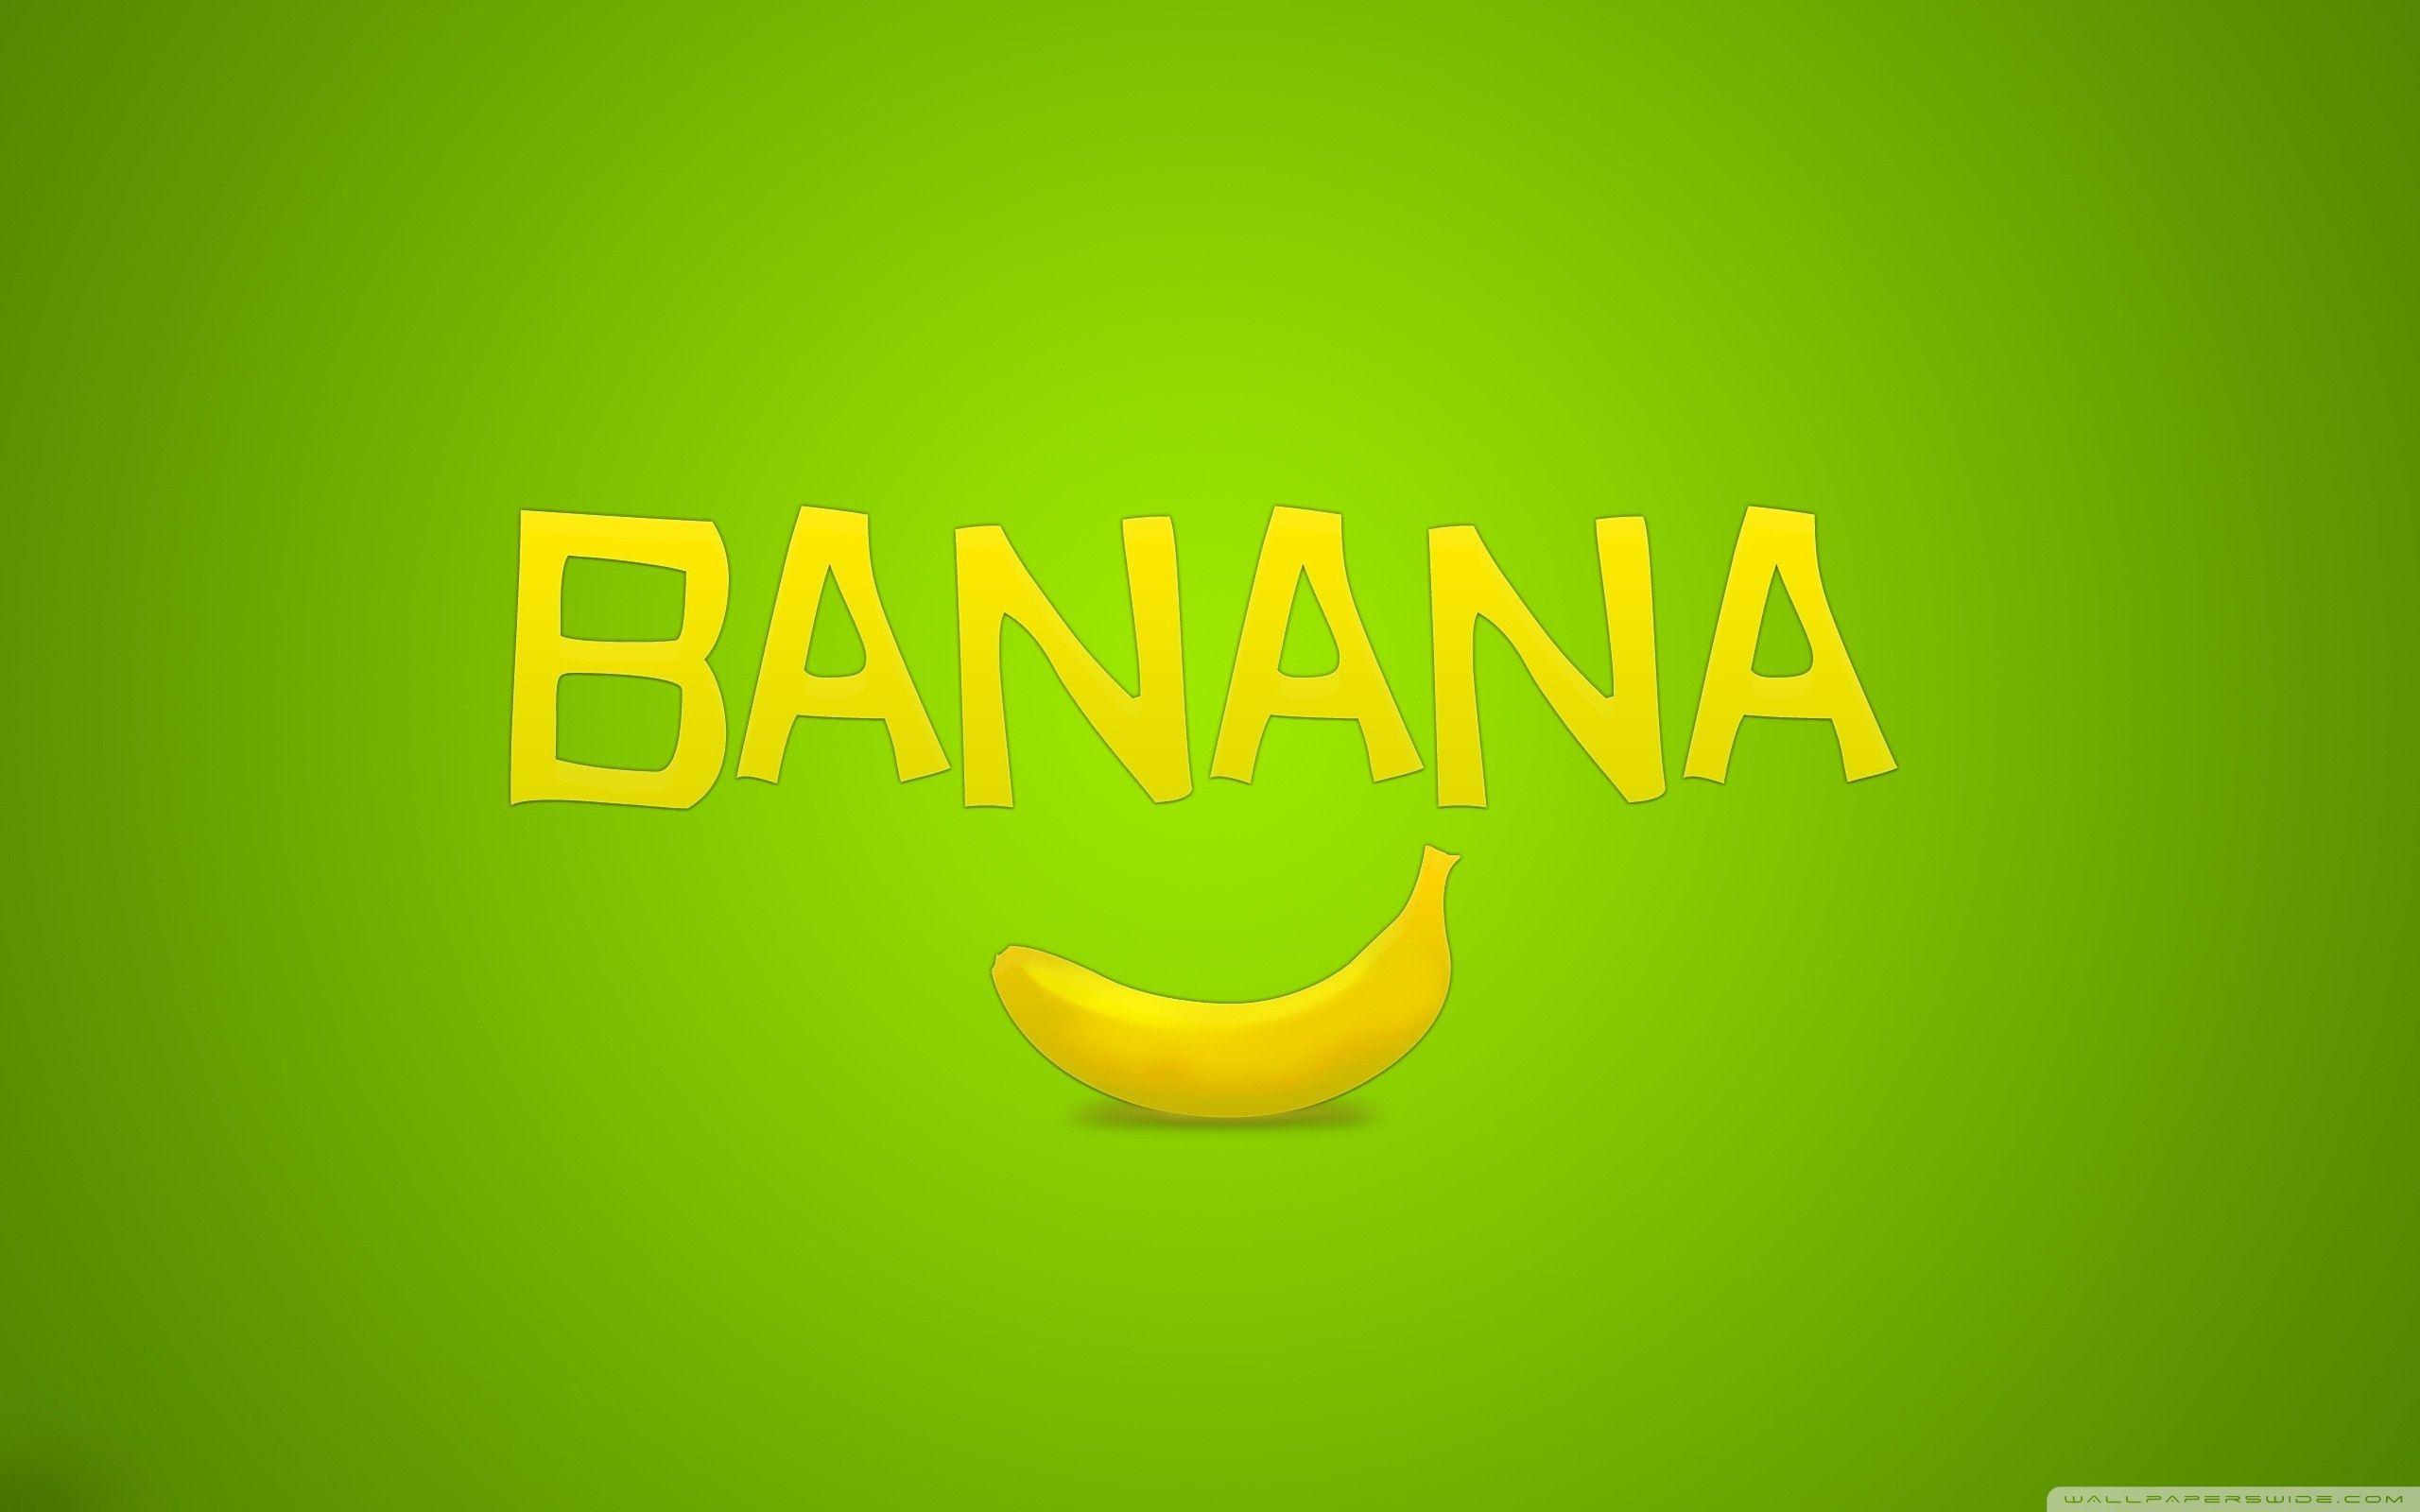 Banana HD desktop wallpaper, High Definition, Fullscreen